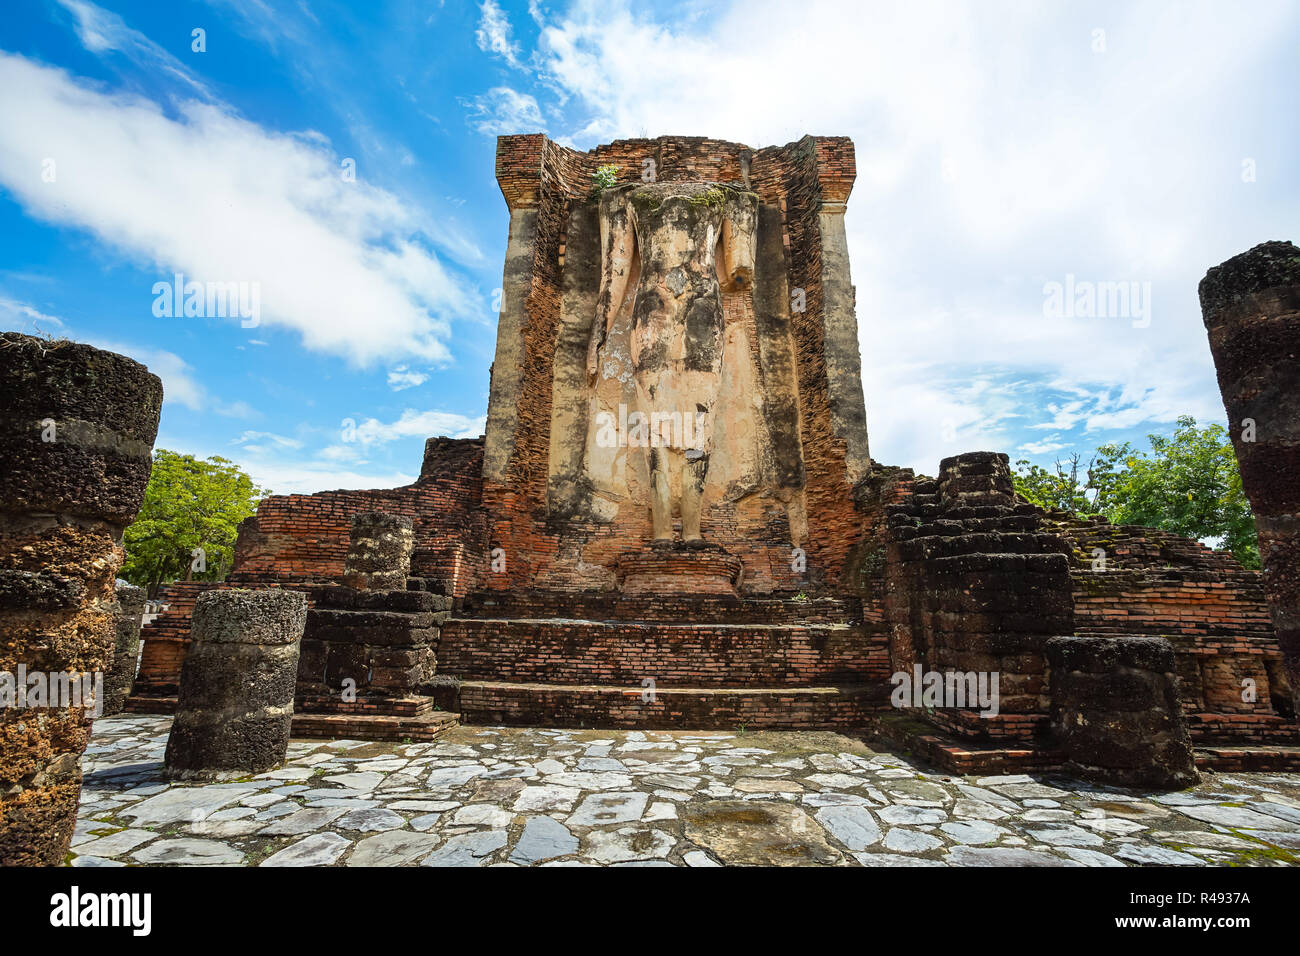 Site du patrimoine mondial de l'Wat Chetuphon dans le parc historique de Sukhothai, Thaïlande, province de Sukhothai Banque D'Images